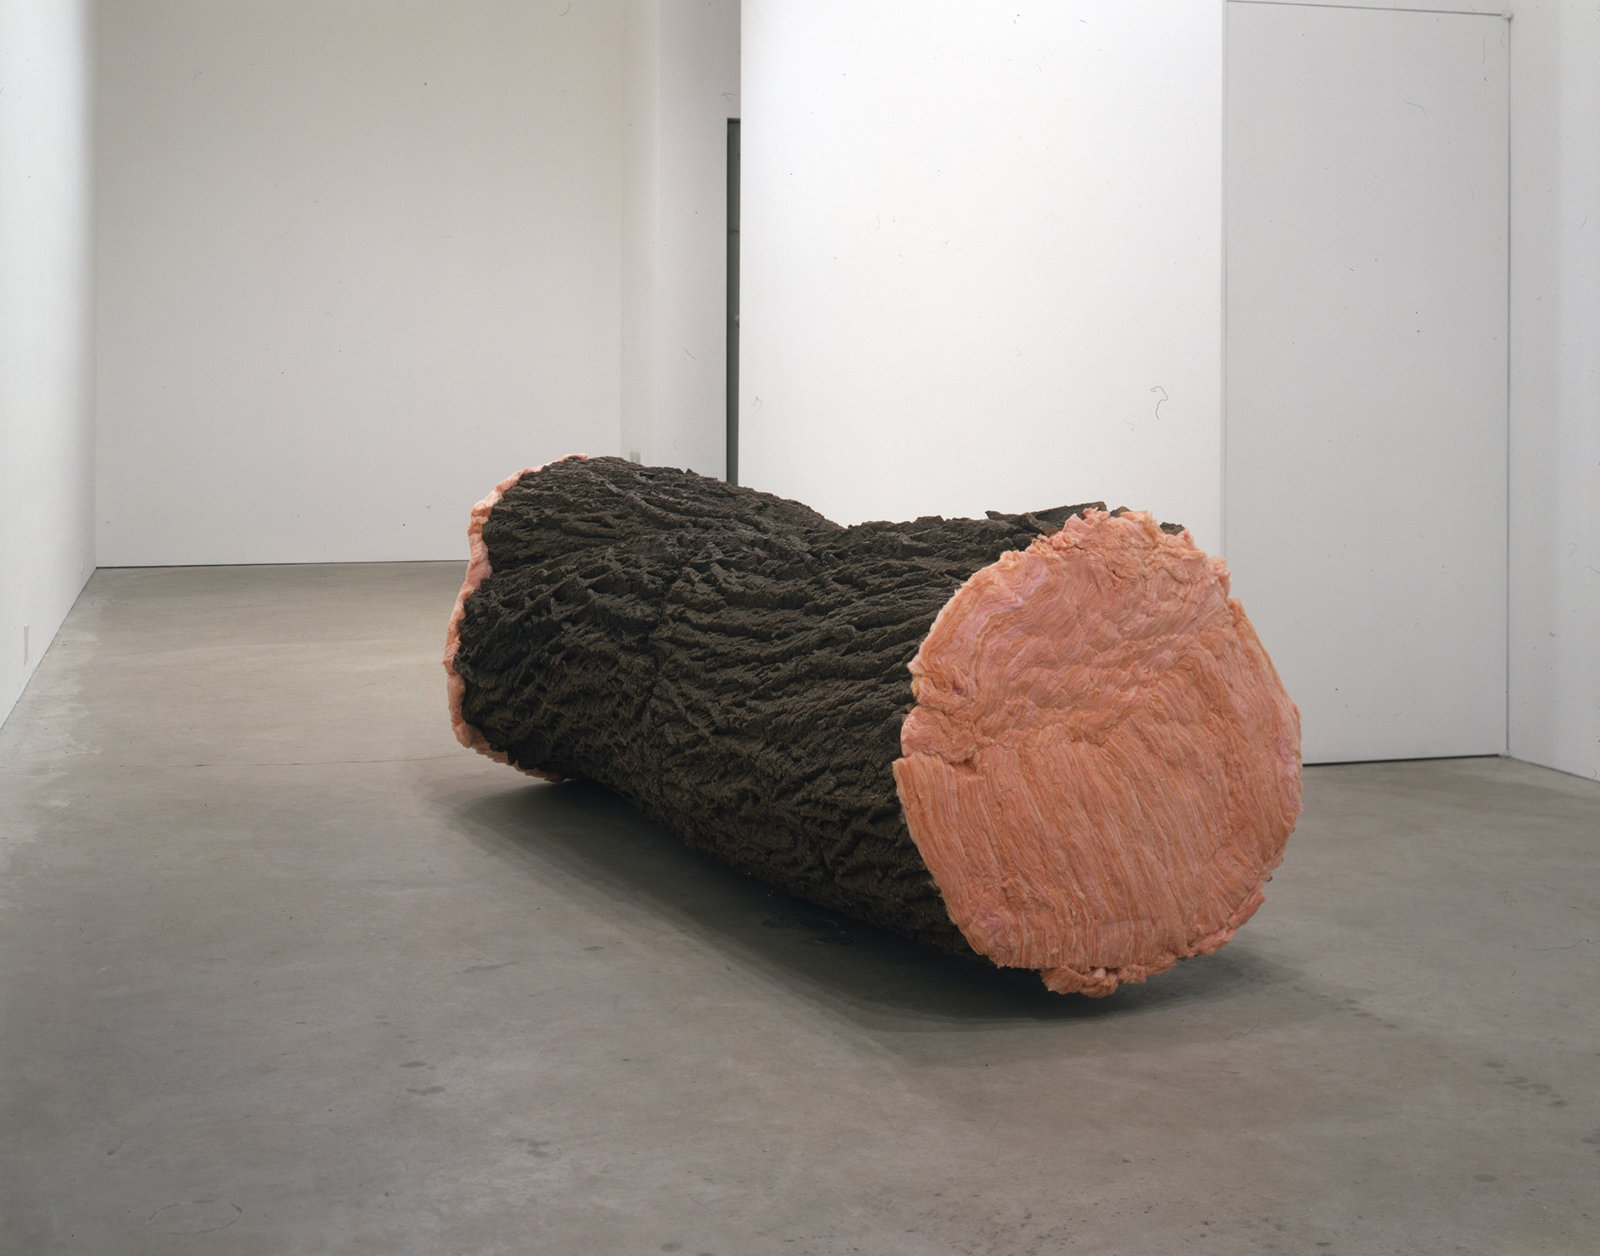 Liz Magor, Wrap, 2003, polymerized gypsum, insulation, 35 x 33 x 100 in. (88 x 84 x 254 cm). Photo: Isaac Applebaum